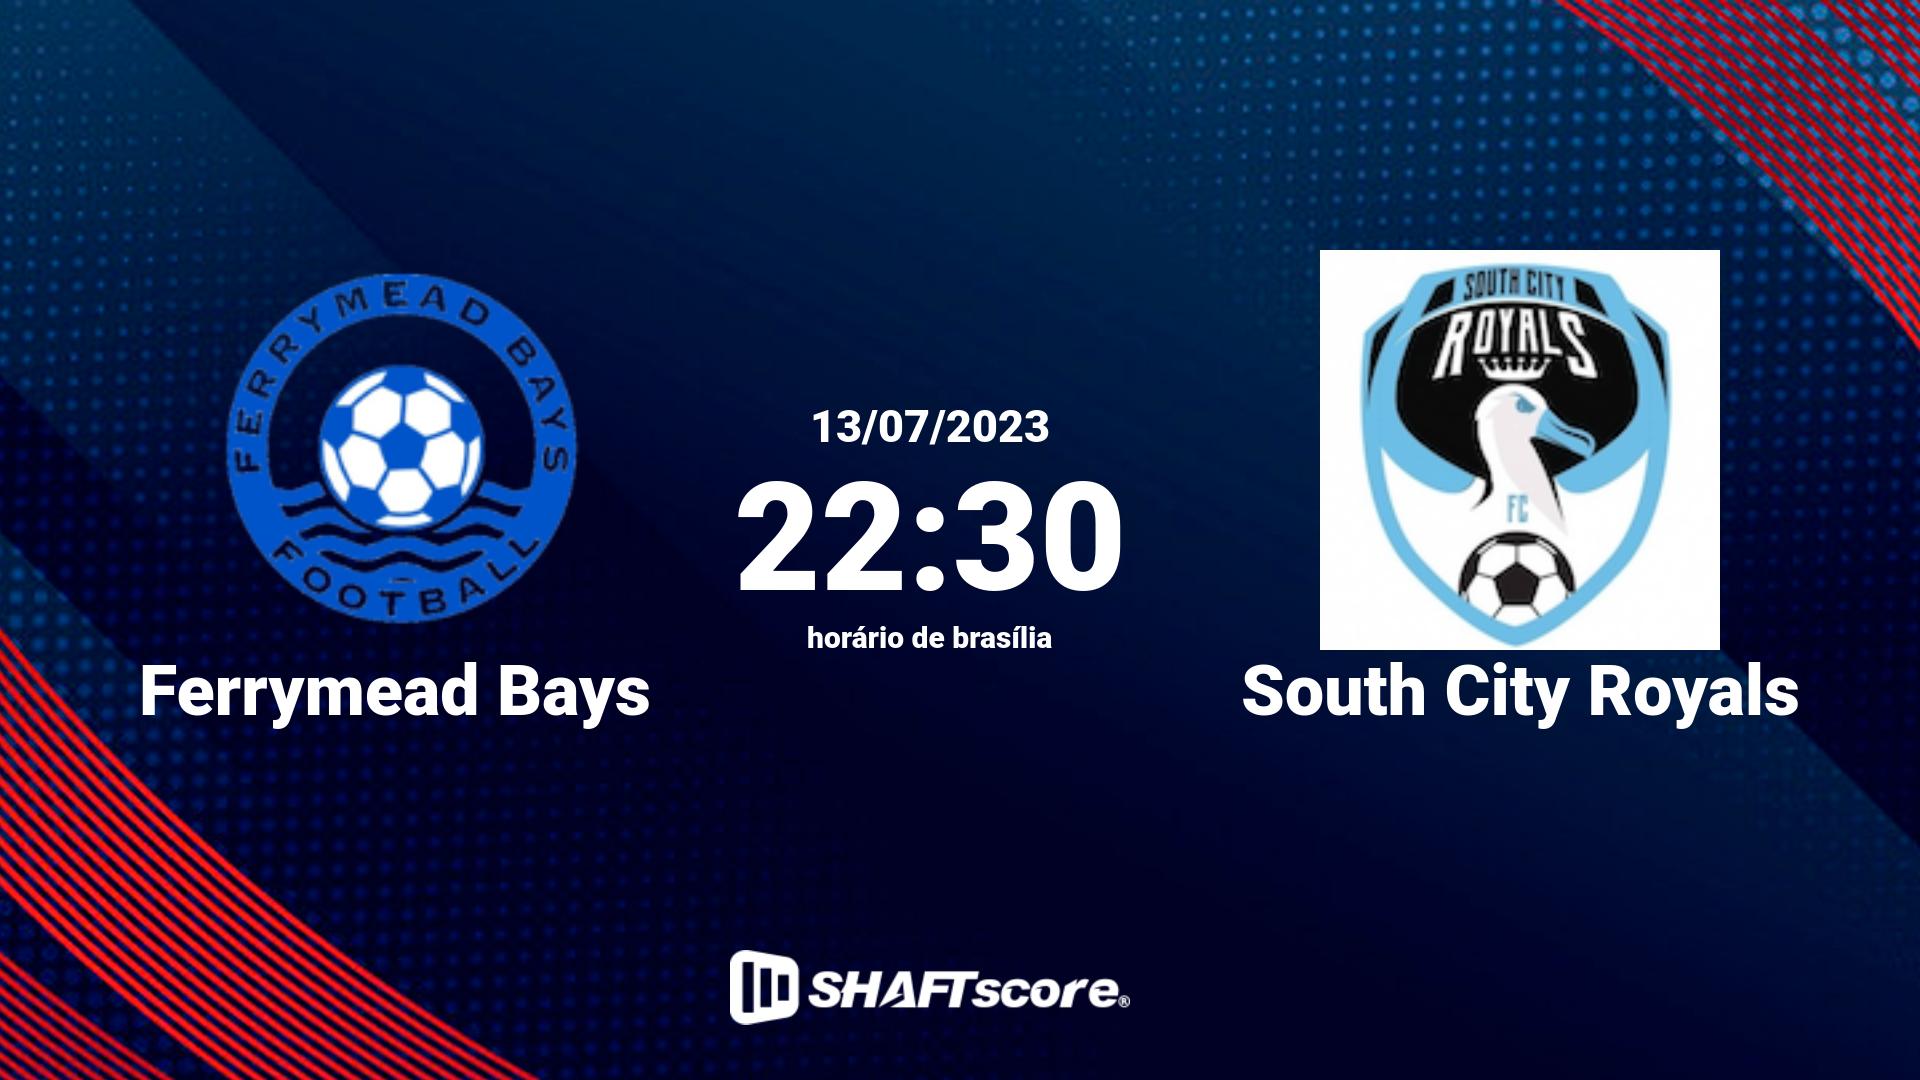 Estatísticas do jogo Ferrymead Bays vs South City Royals 13.07 22:30